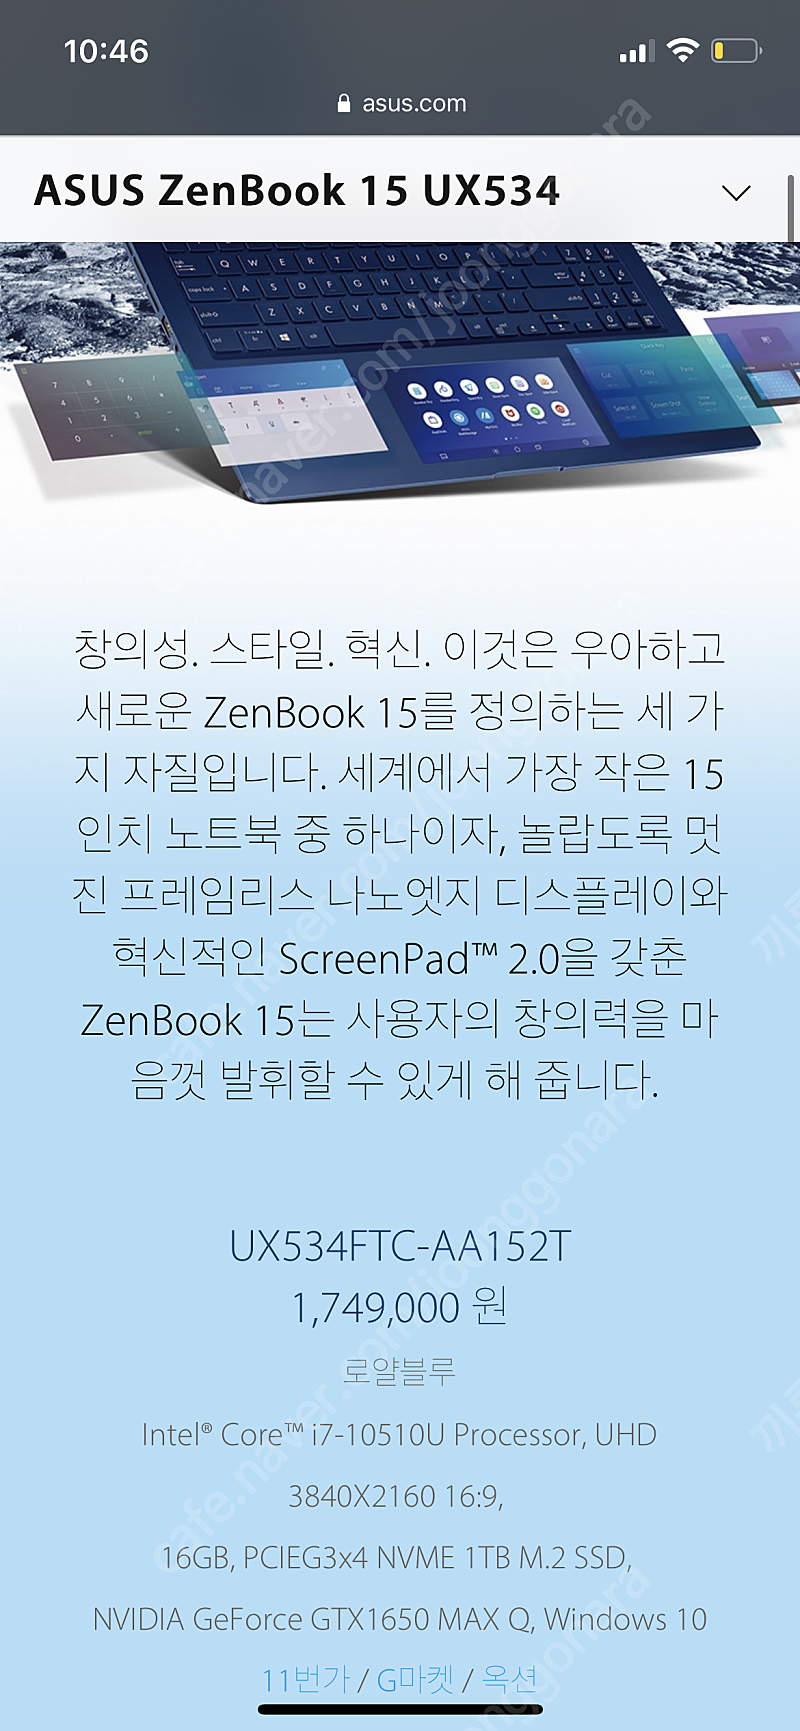 (업자x) 고성능 노트북 ASUS 젠북 UX534FTC-AA152T 판매합니다